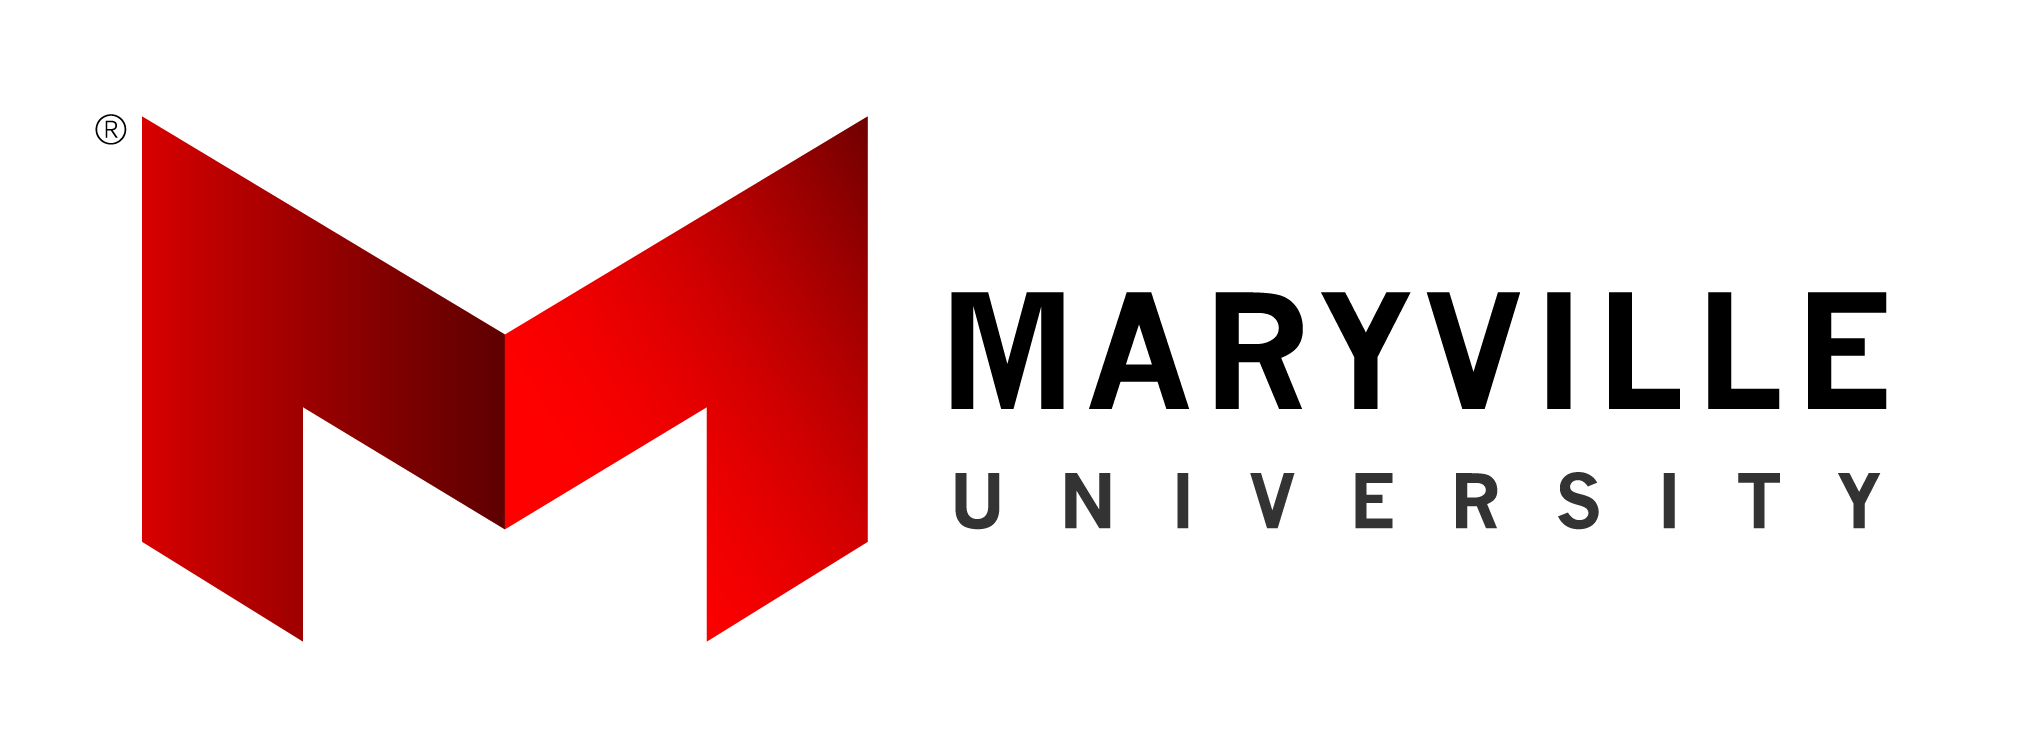 Maryville University of St. Louis